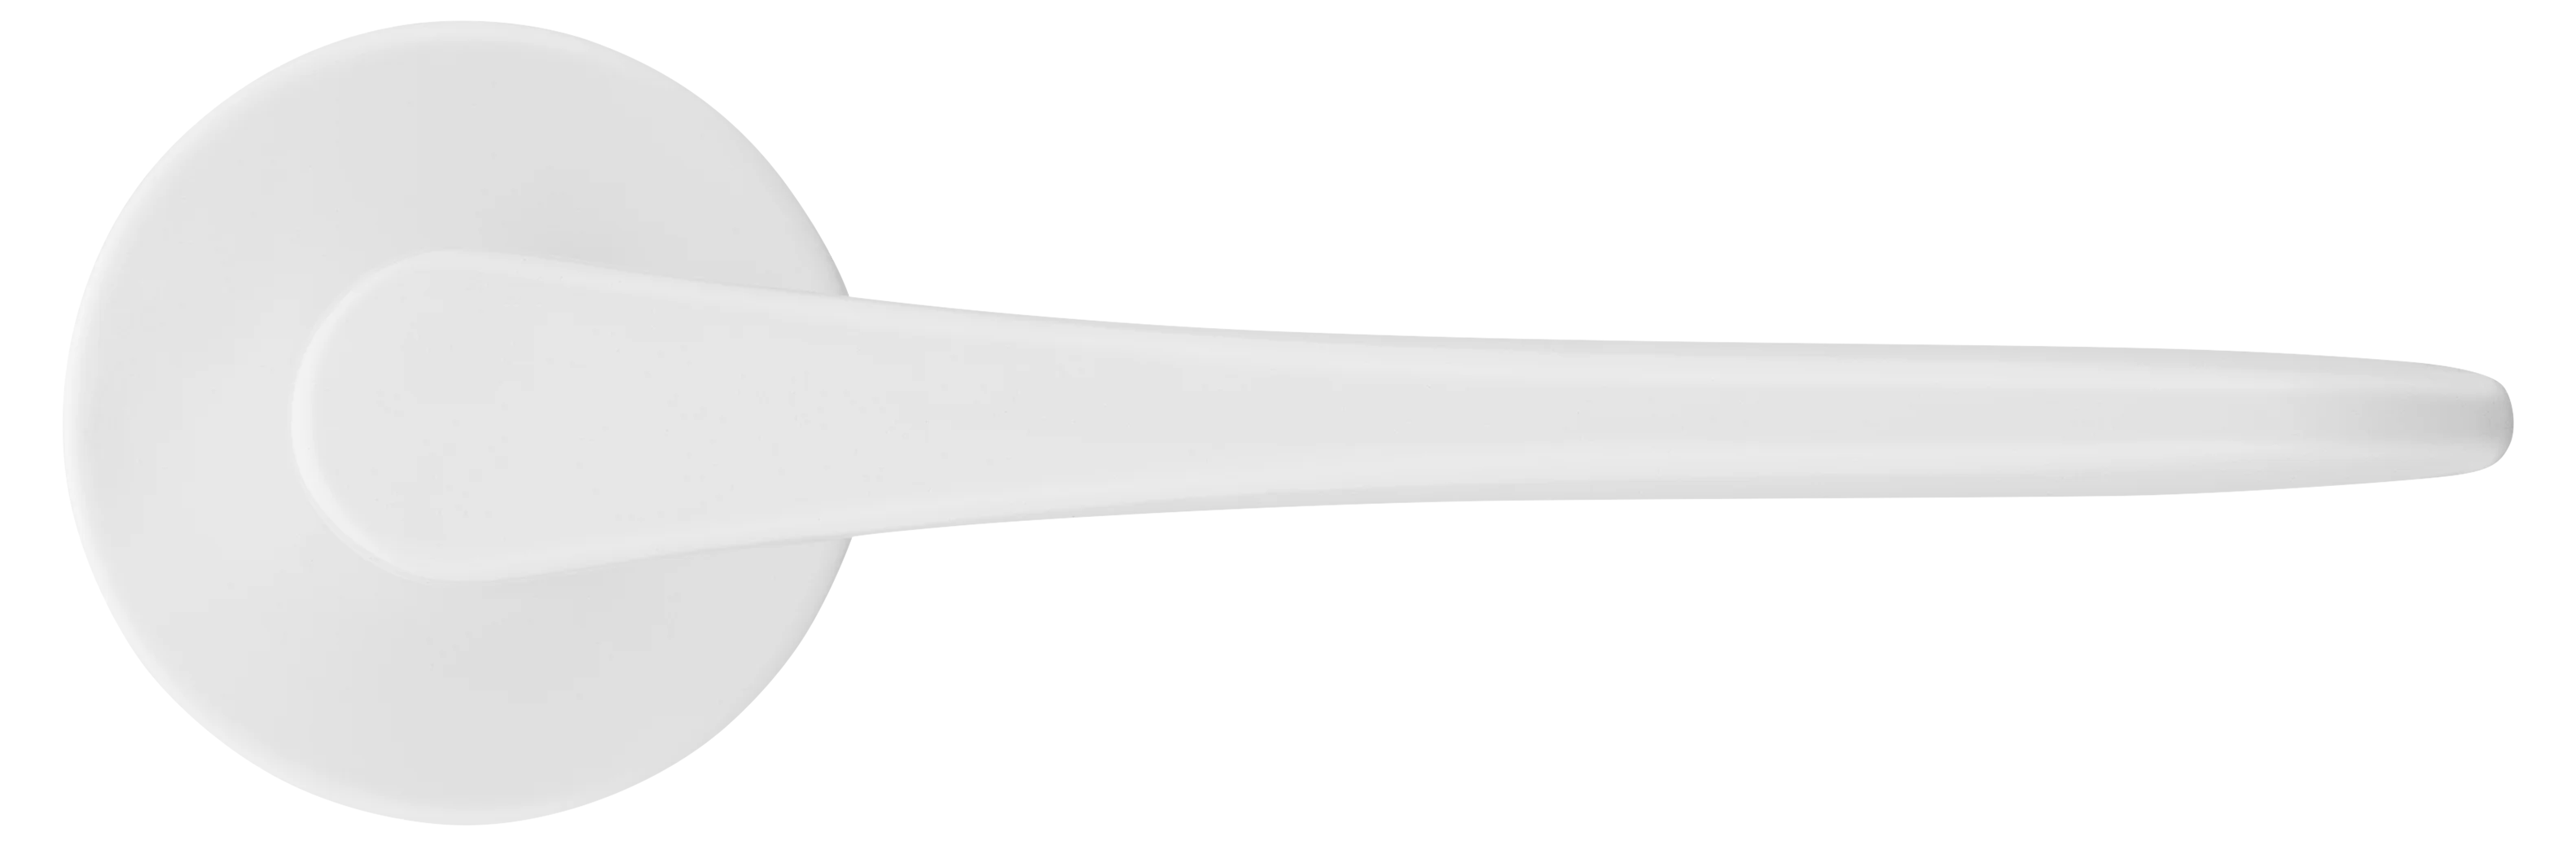 AULA R5 BIA, ручка дверная на розетке 7мм, цвет -  белый фото купить в Самаре